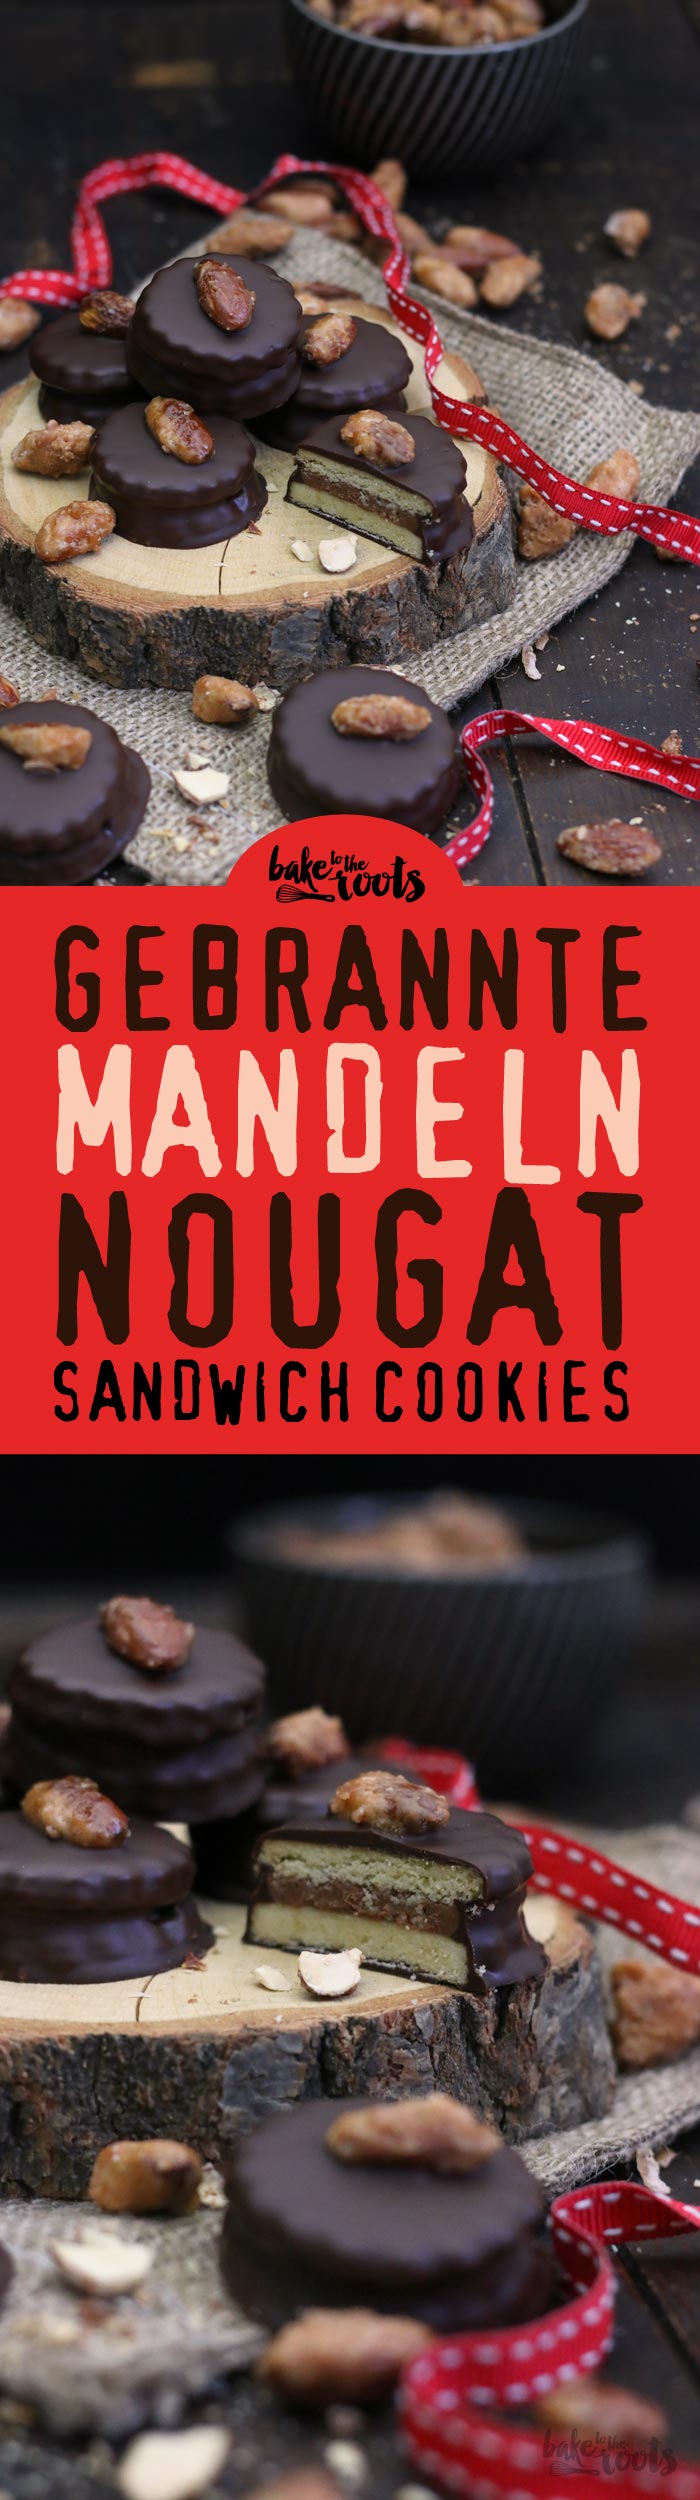 Leckere Sandwich Cookies mit einer Füllung aus Nuss-Nougat und Gebrannten Mandeln | Bake to the roots